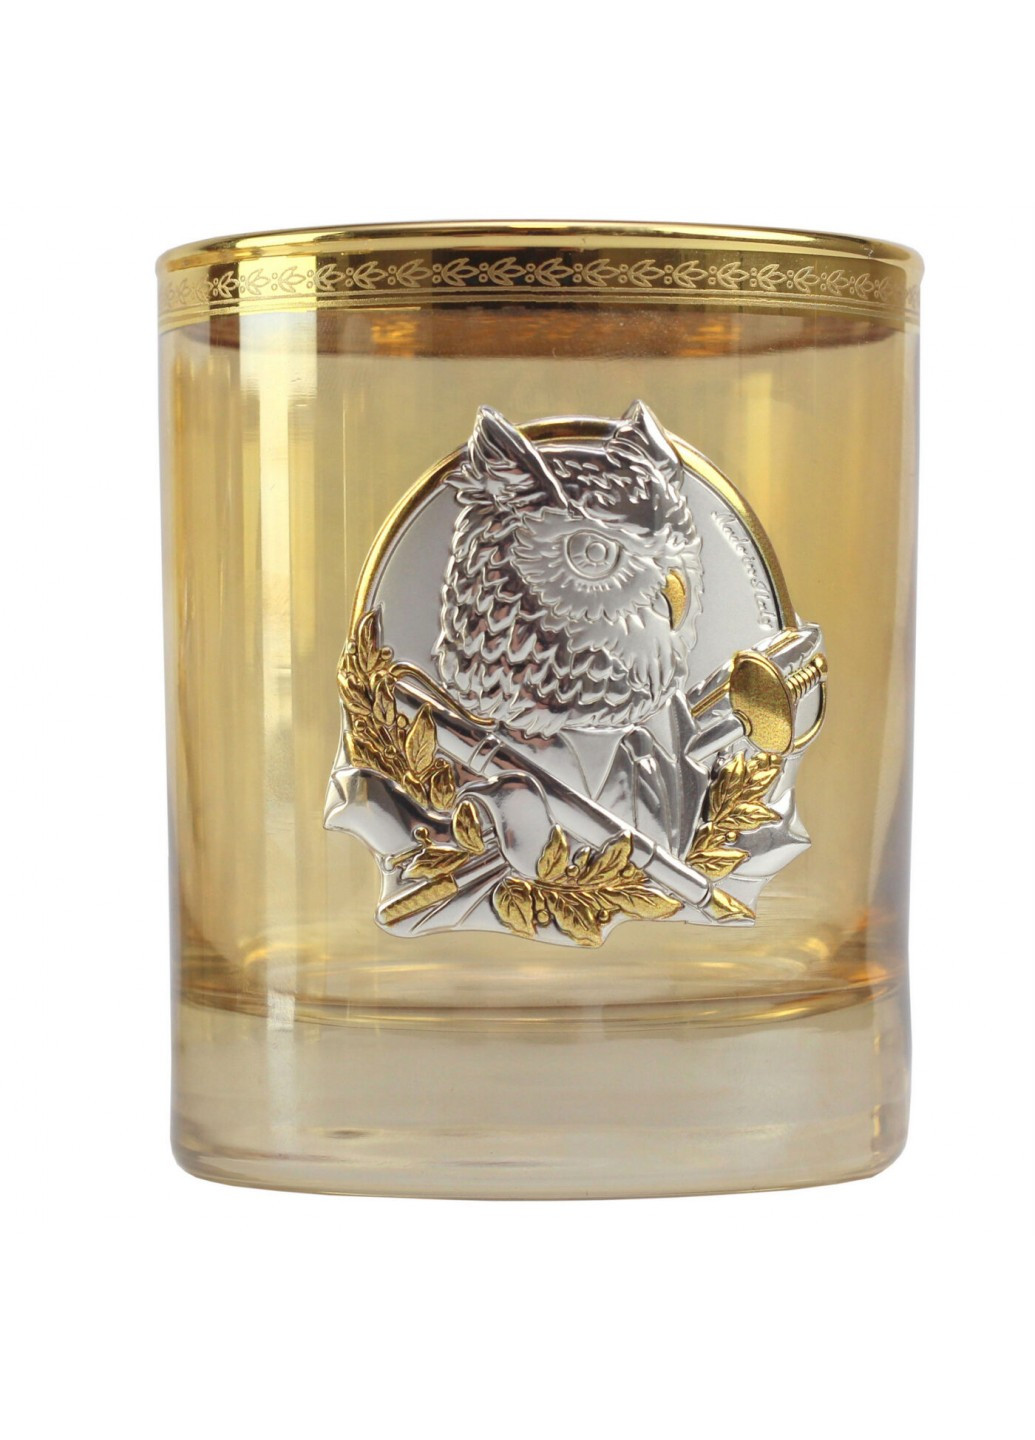 Набор стаканов Лидер Люкс 6 стаканов с золотыми накладками Boss Crystal (252344581)